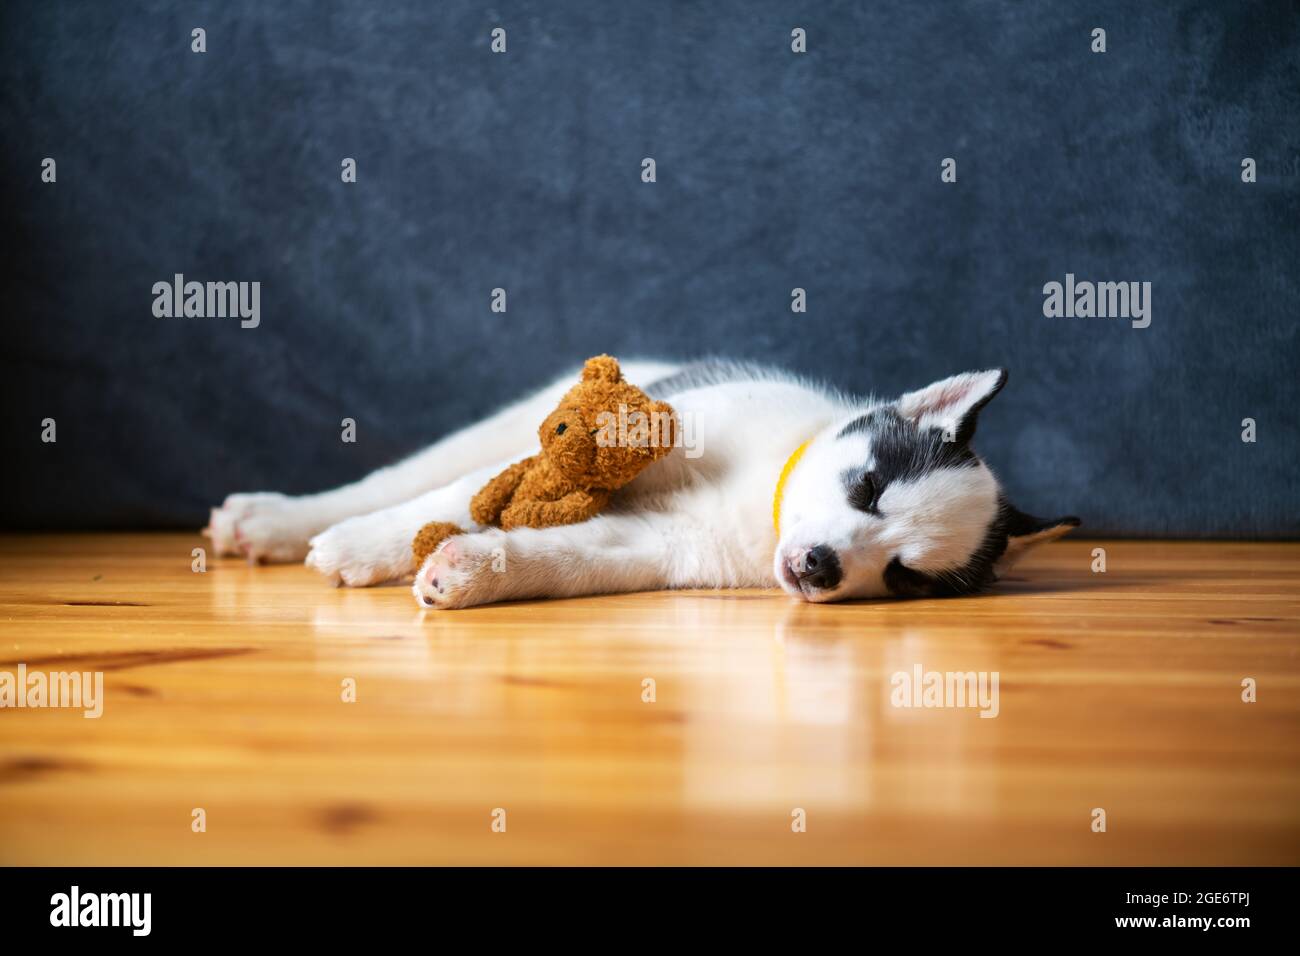 Un petit chien blanc chiot race husky sibérien avec de beaux yeux bleus repose sur un sol en bois avec un jouet ours en peluche. Photographie de chiens et d'animaux de compagnie Banque D'Images